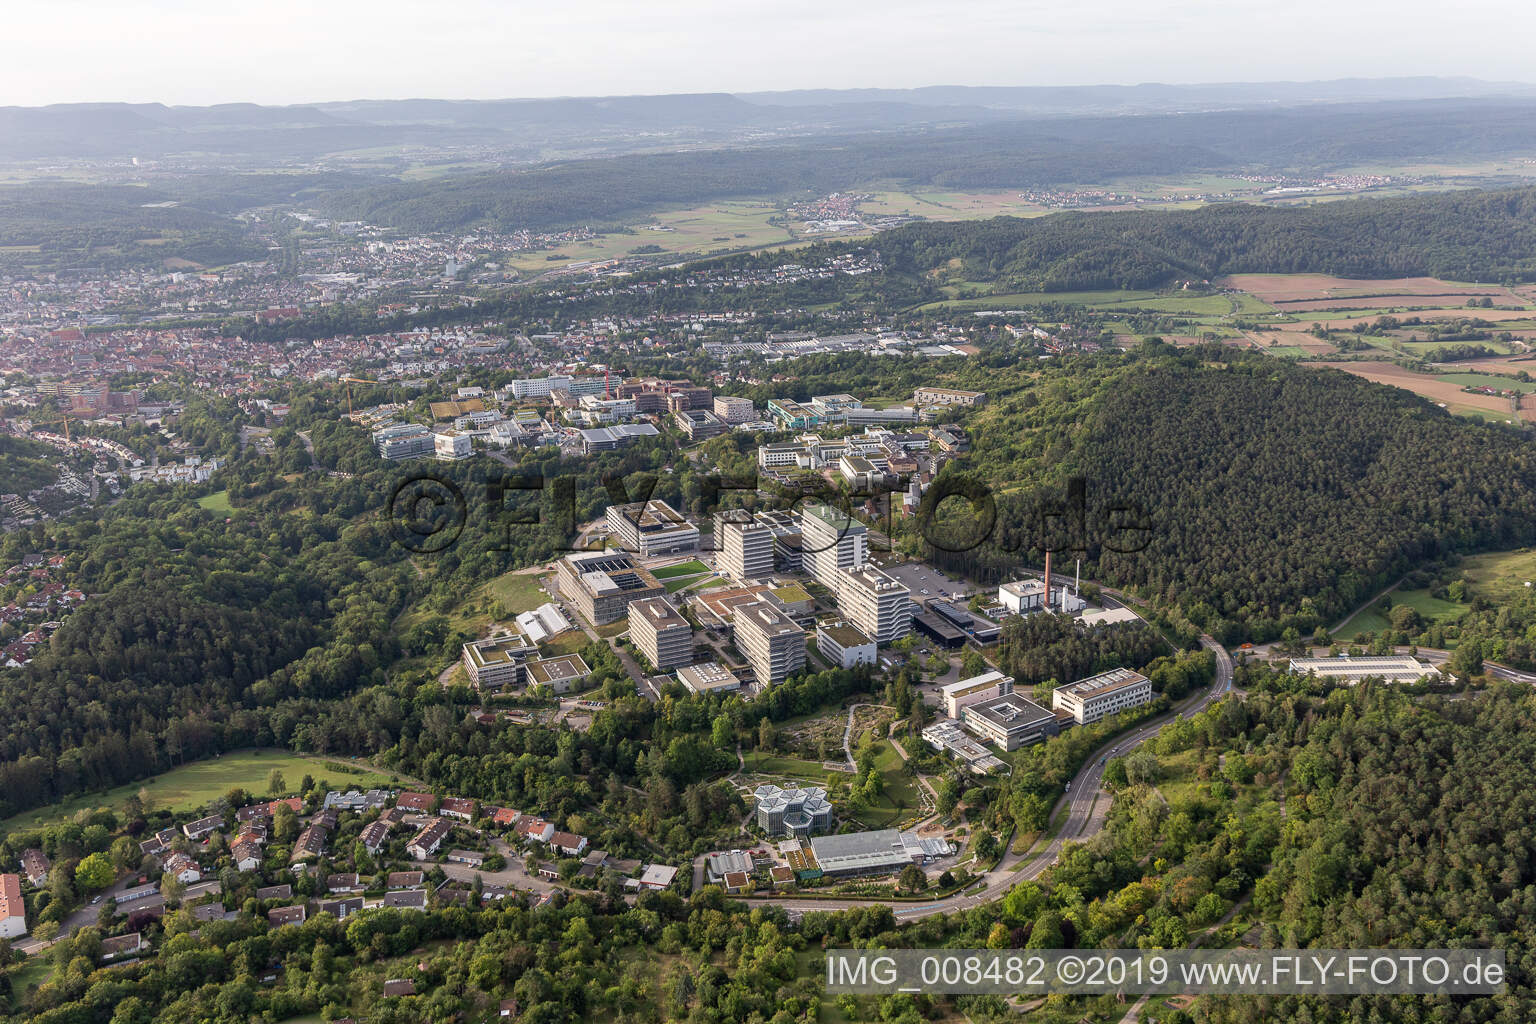 Photographie aérienne de Clinique BG, Université et Hôpital Universitaire Tübingen à Tübingen dans le département Bade-Wurtemberg, Allemagne